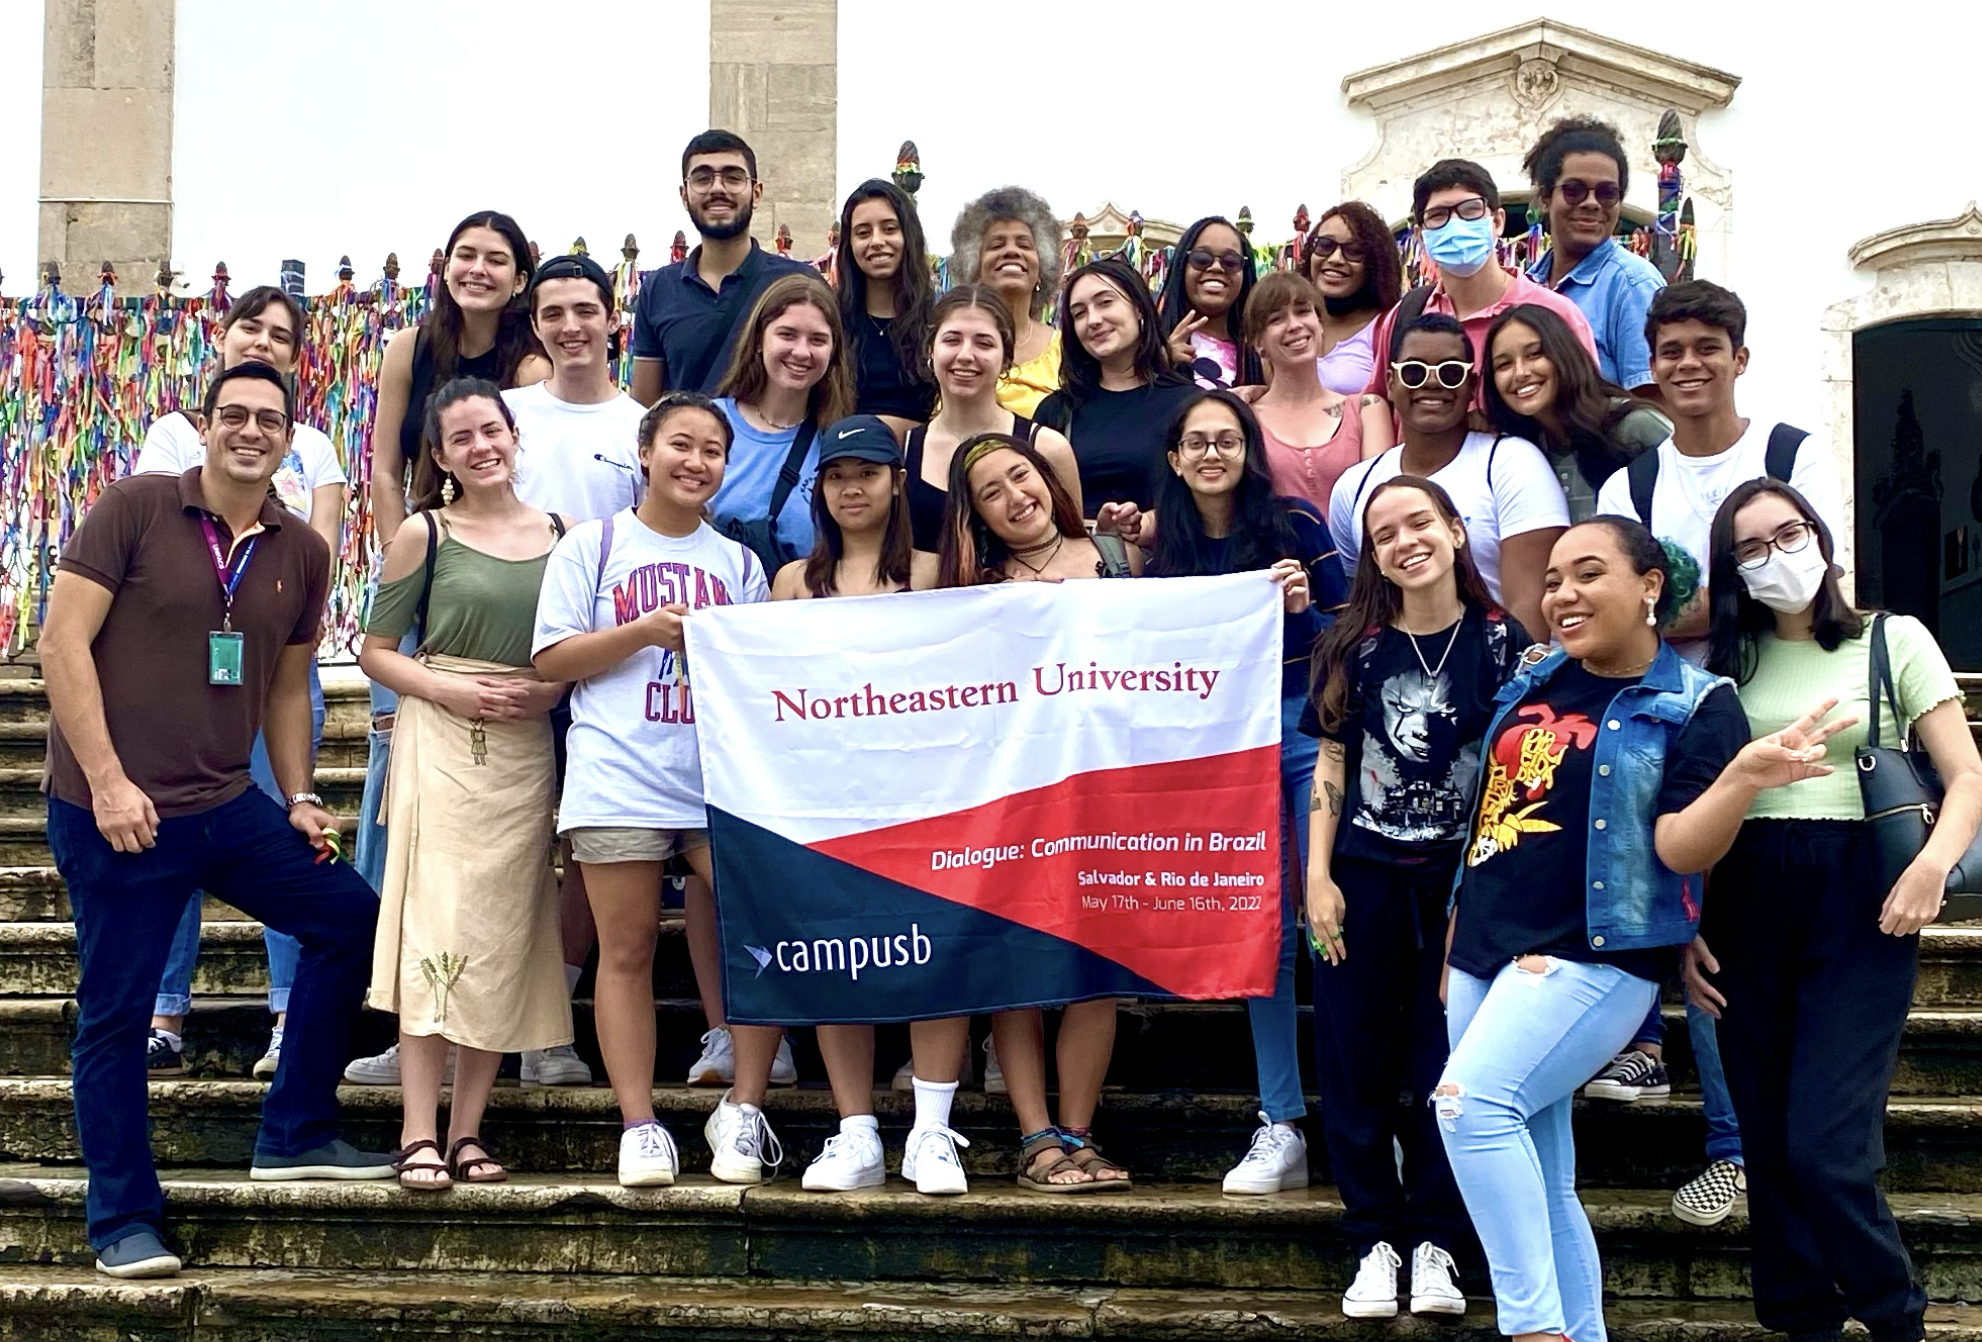 Alunos da Northeastern University fazem tour por Salvador com alunos da UNIFACS